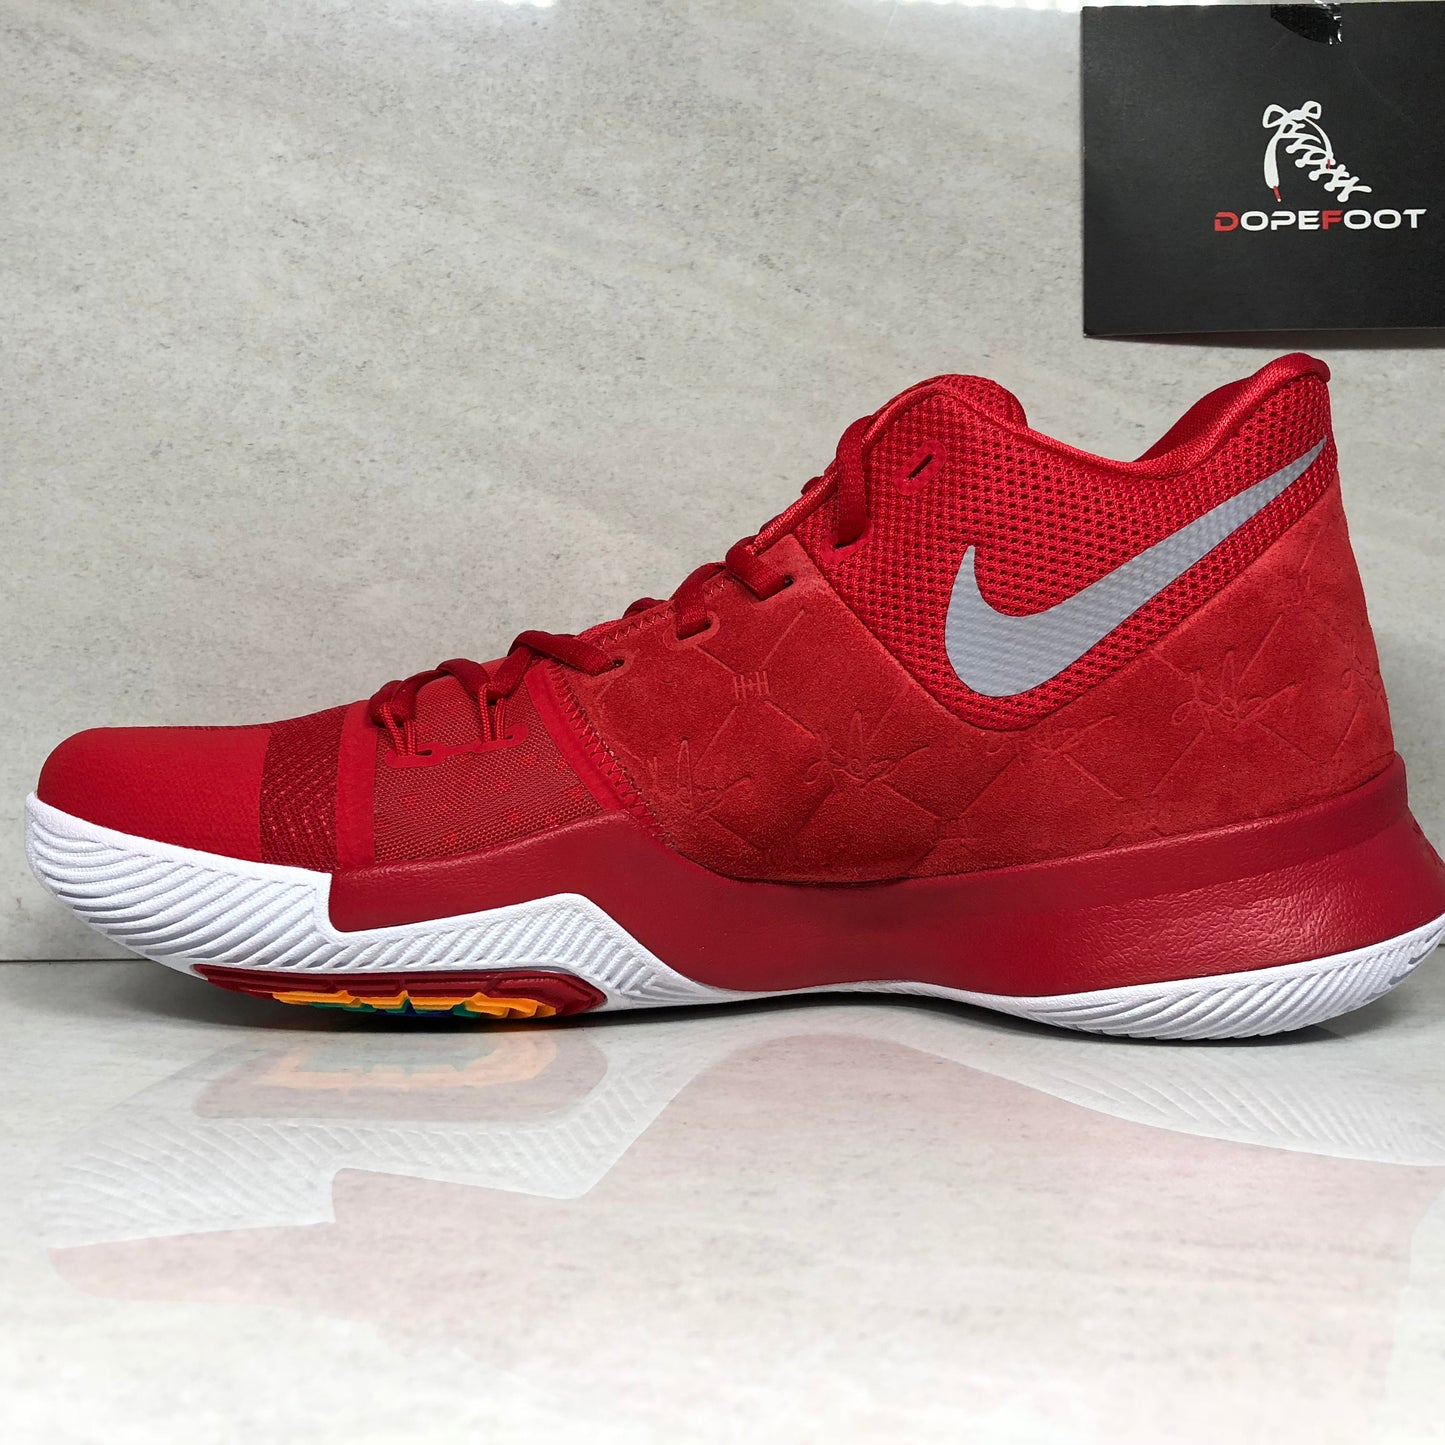 Nike Basketball Kyrie 3 Rojo universitario/Blanco - 852395 601 - Talla de hombre 11.5